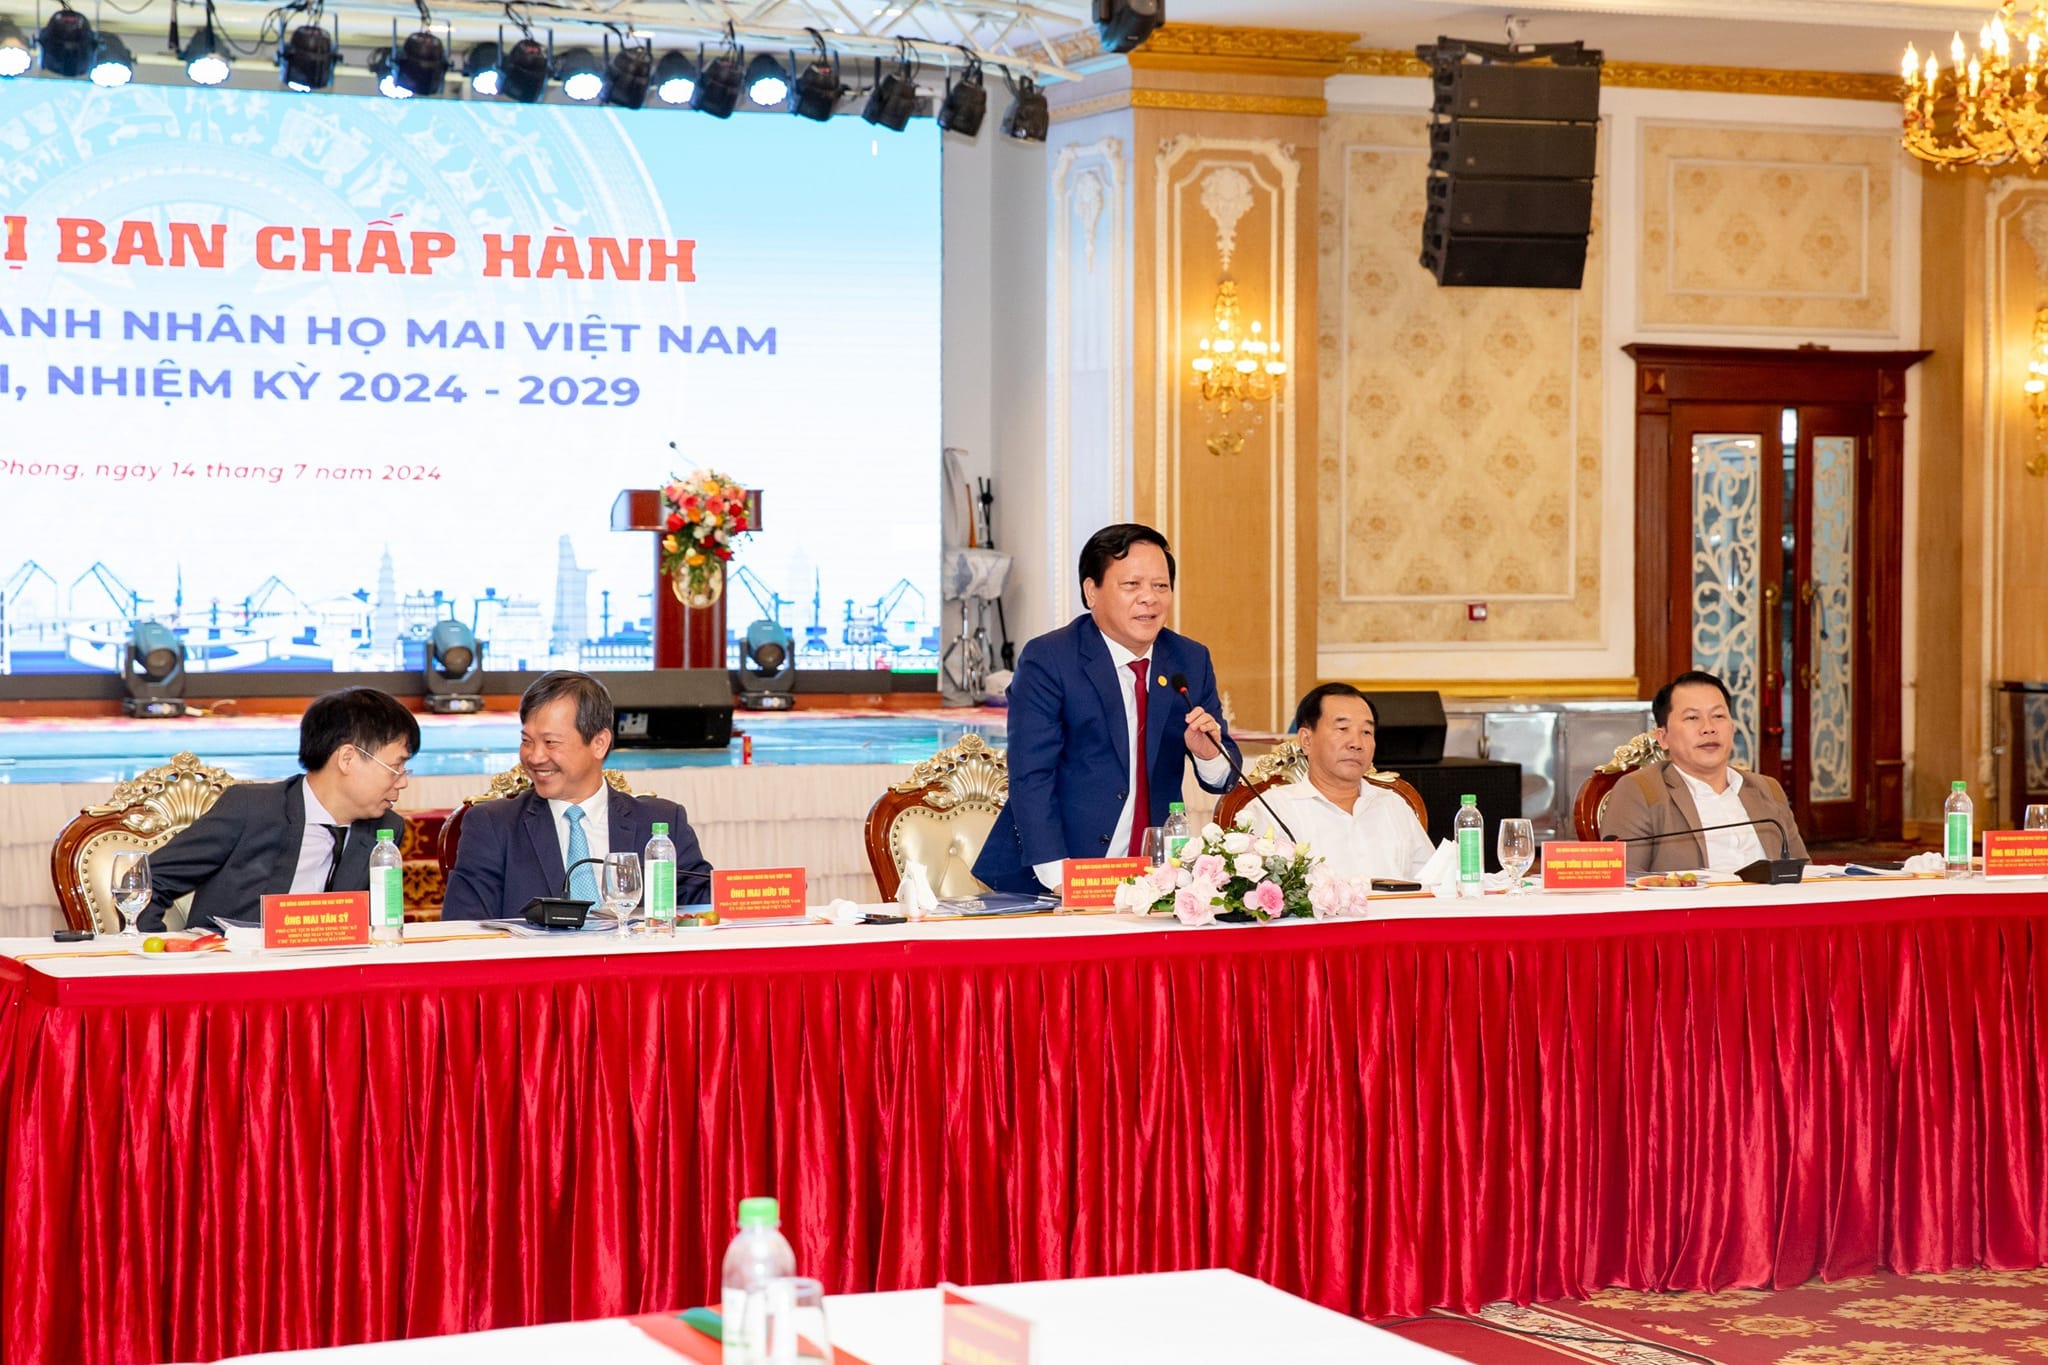 Hội Nghị Ban Chấp Hành Hội Đồng Doanh Nhân Họ Mai Việt Nam Lần thứ I (Nhiệm kỳ 2024 – 2029)